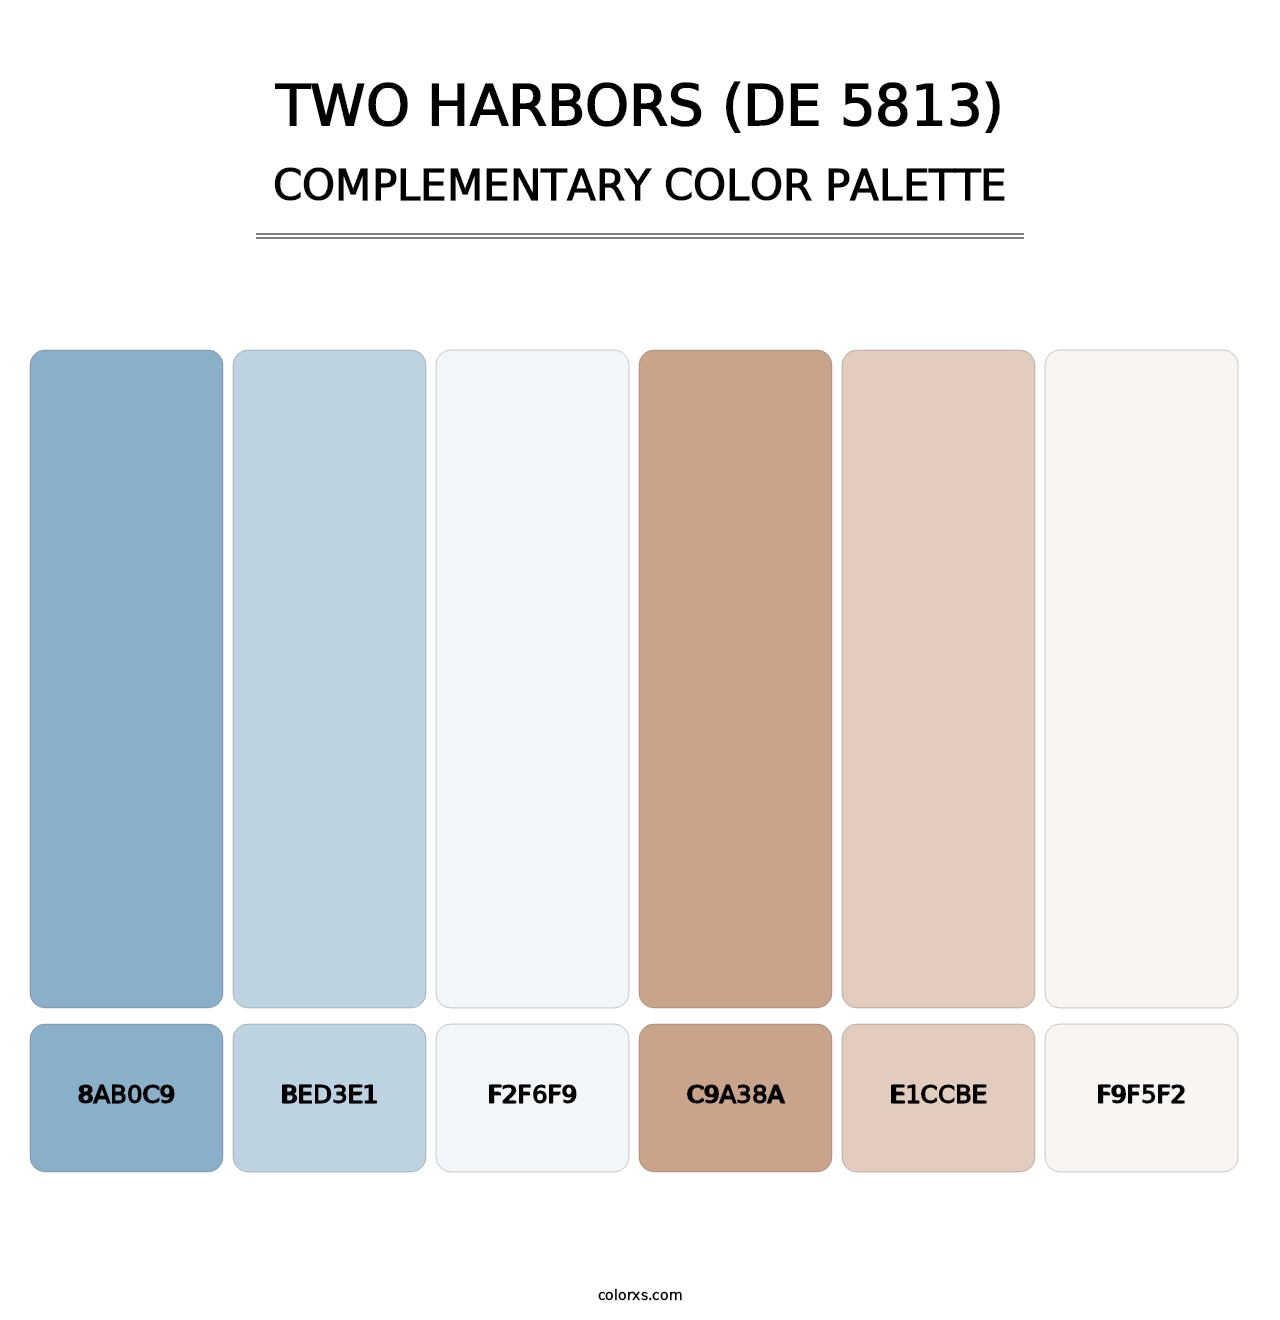 Two Harbors (DE 5813) - Complementary Color Palette